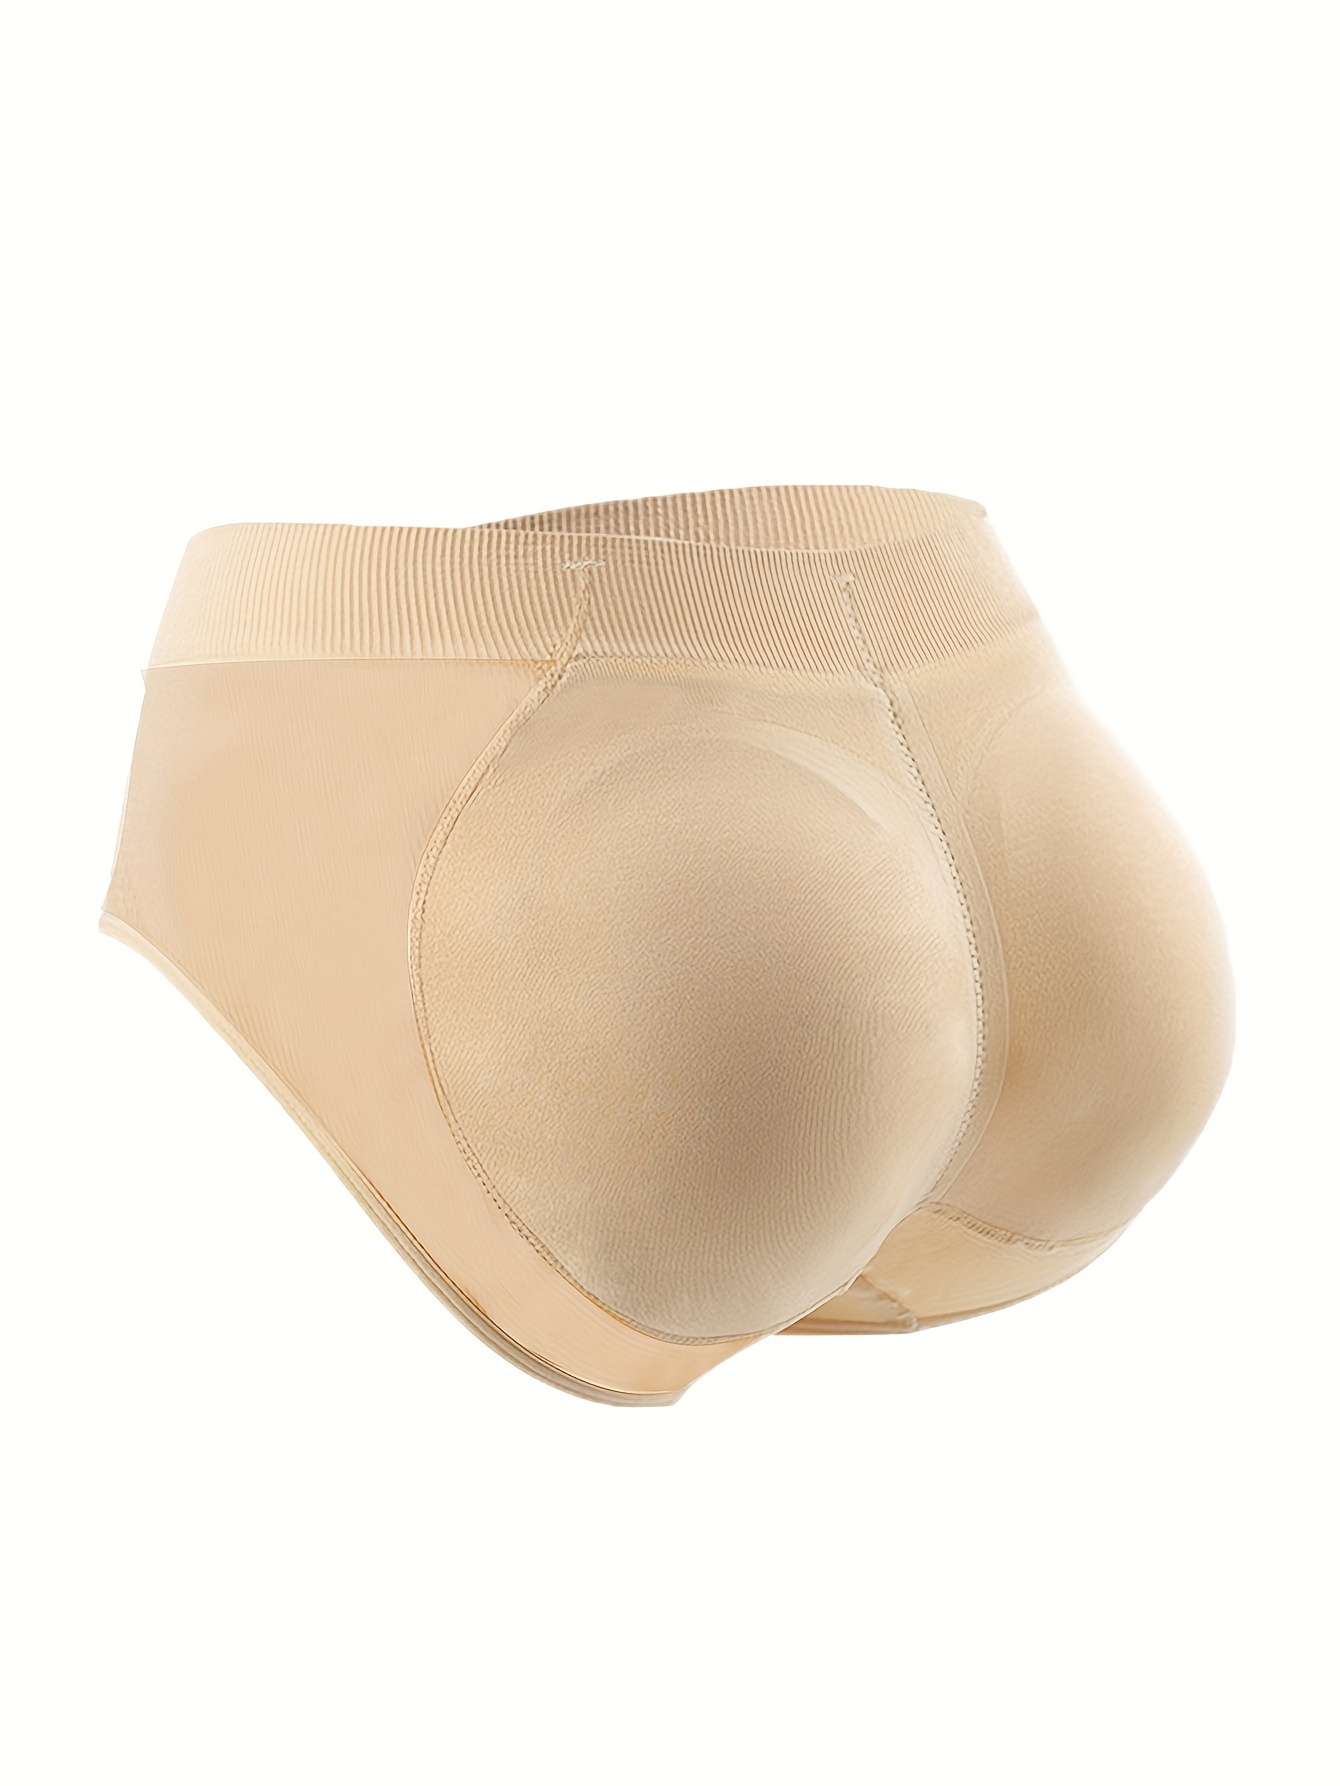 Women's Body Shaper Butt Enhancing Panties Butt Lifter Tummy Control  Seamless Underwear With Butt Pads Beige M-3XL